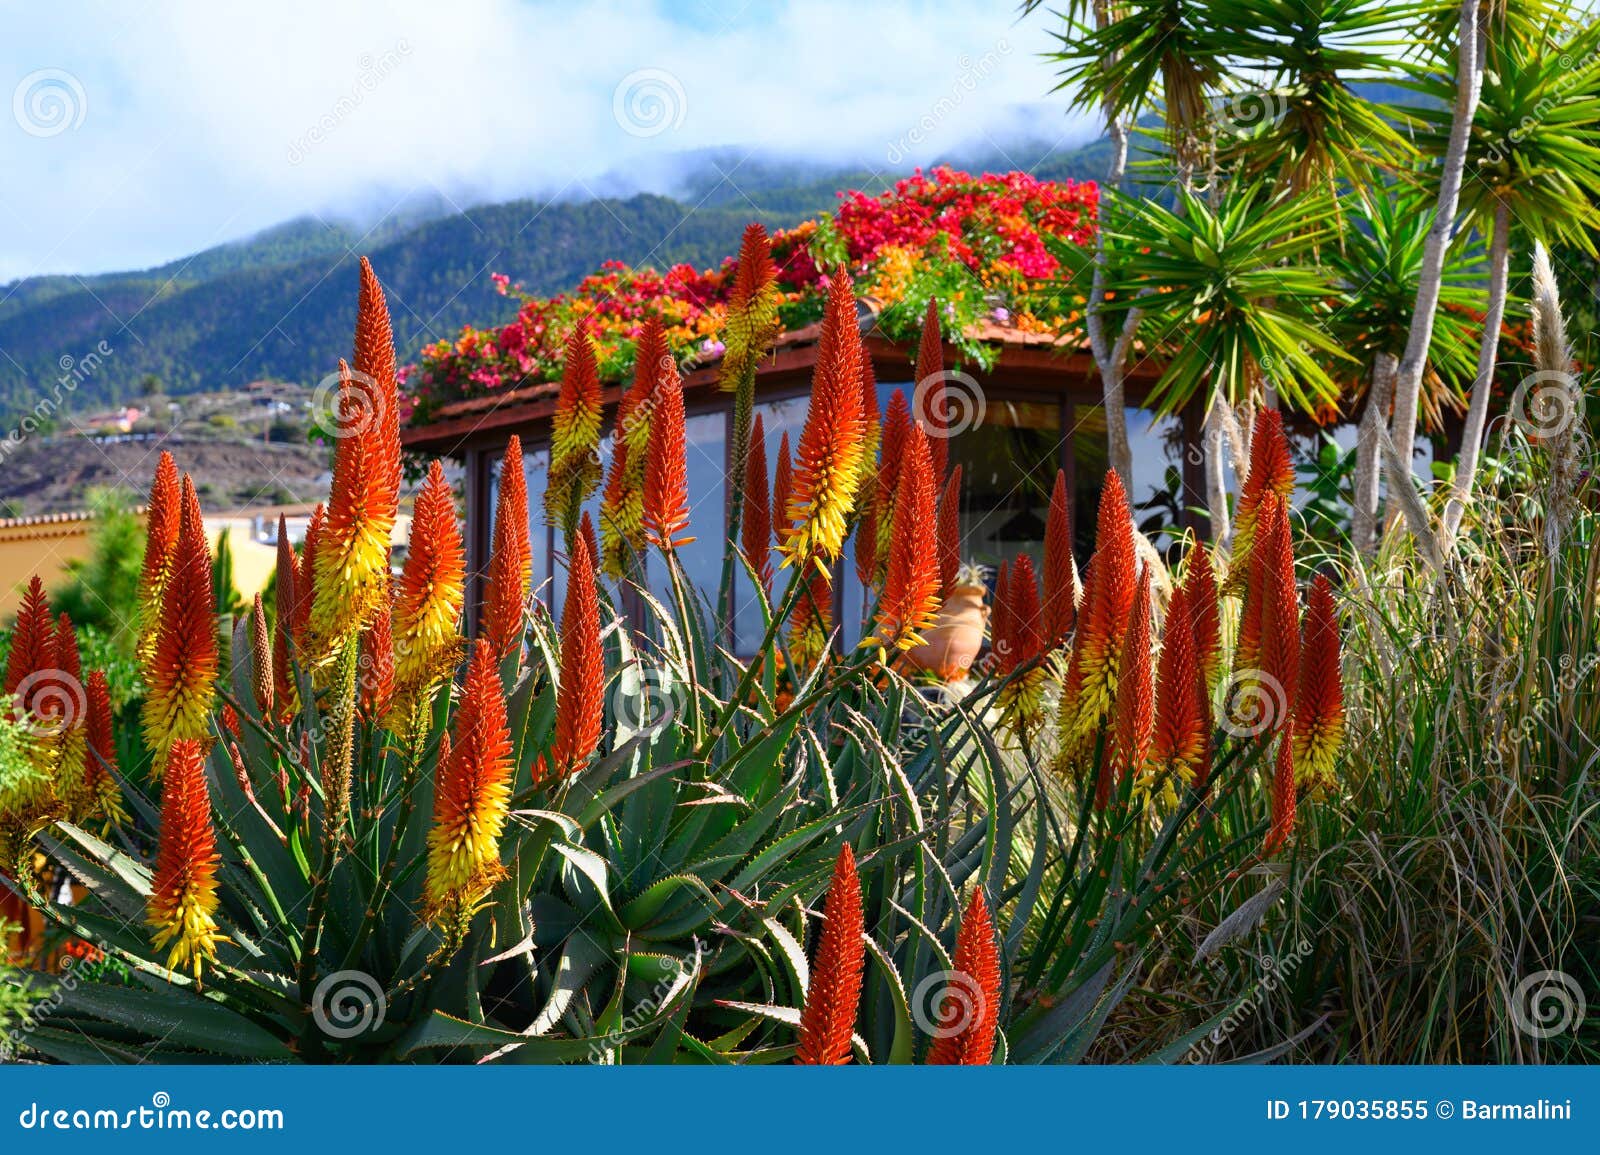 Flor Colorida De La Planta De Aloe Vera En La Isla Tropical La Palma Imagen  de archivo - Imagen de planta, flor: 179035855